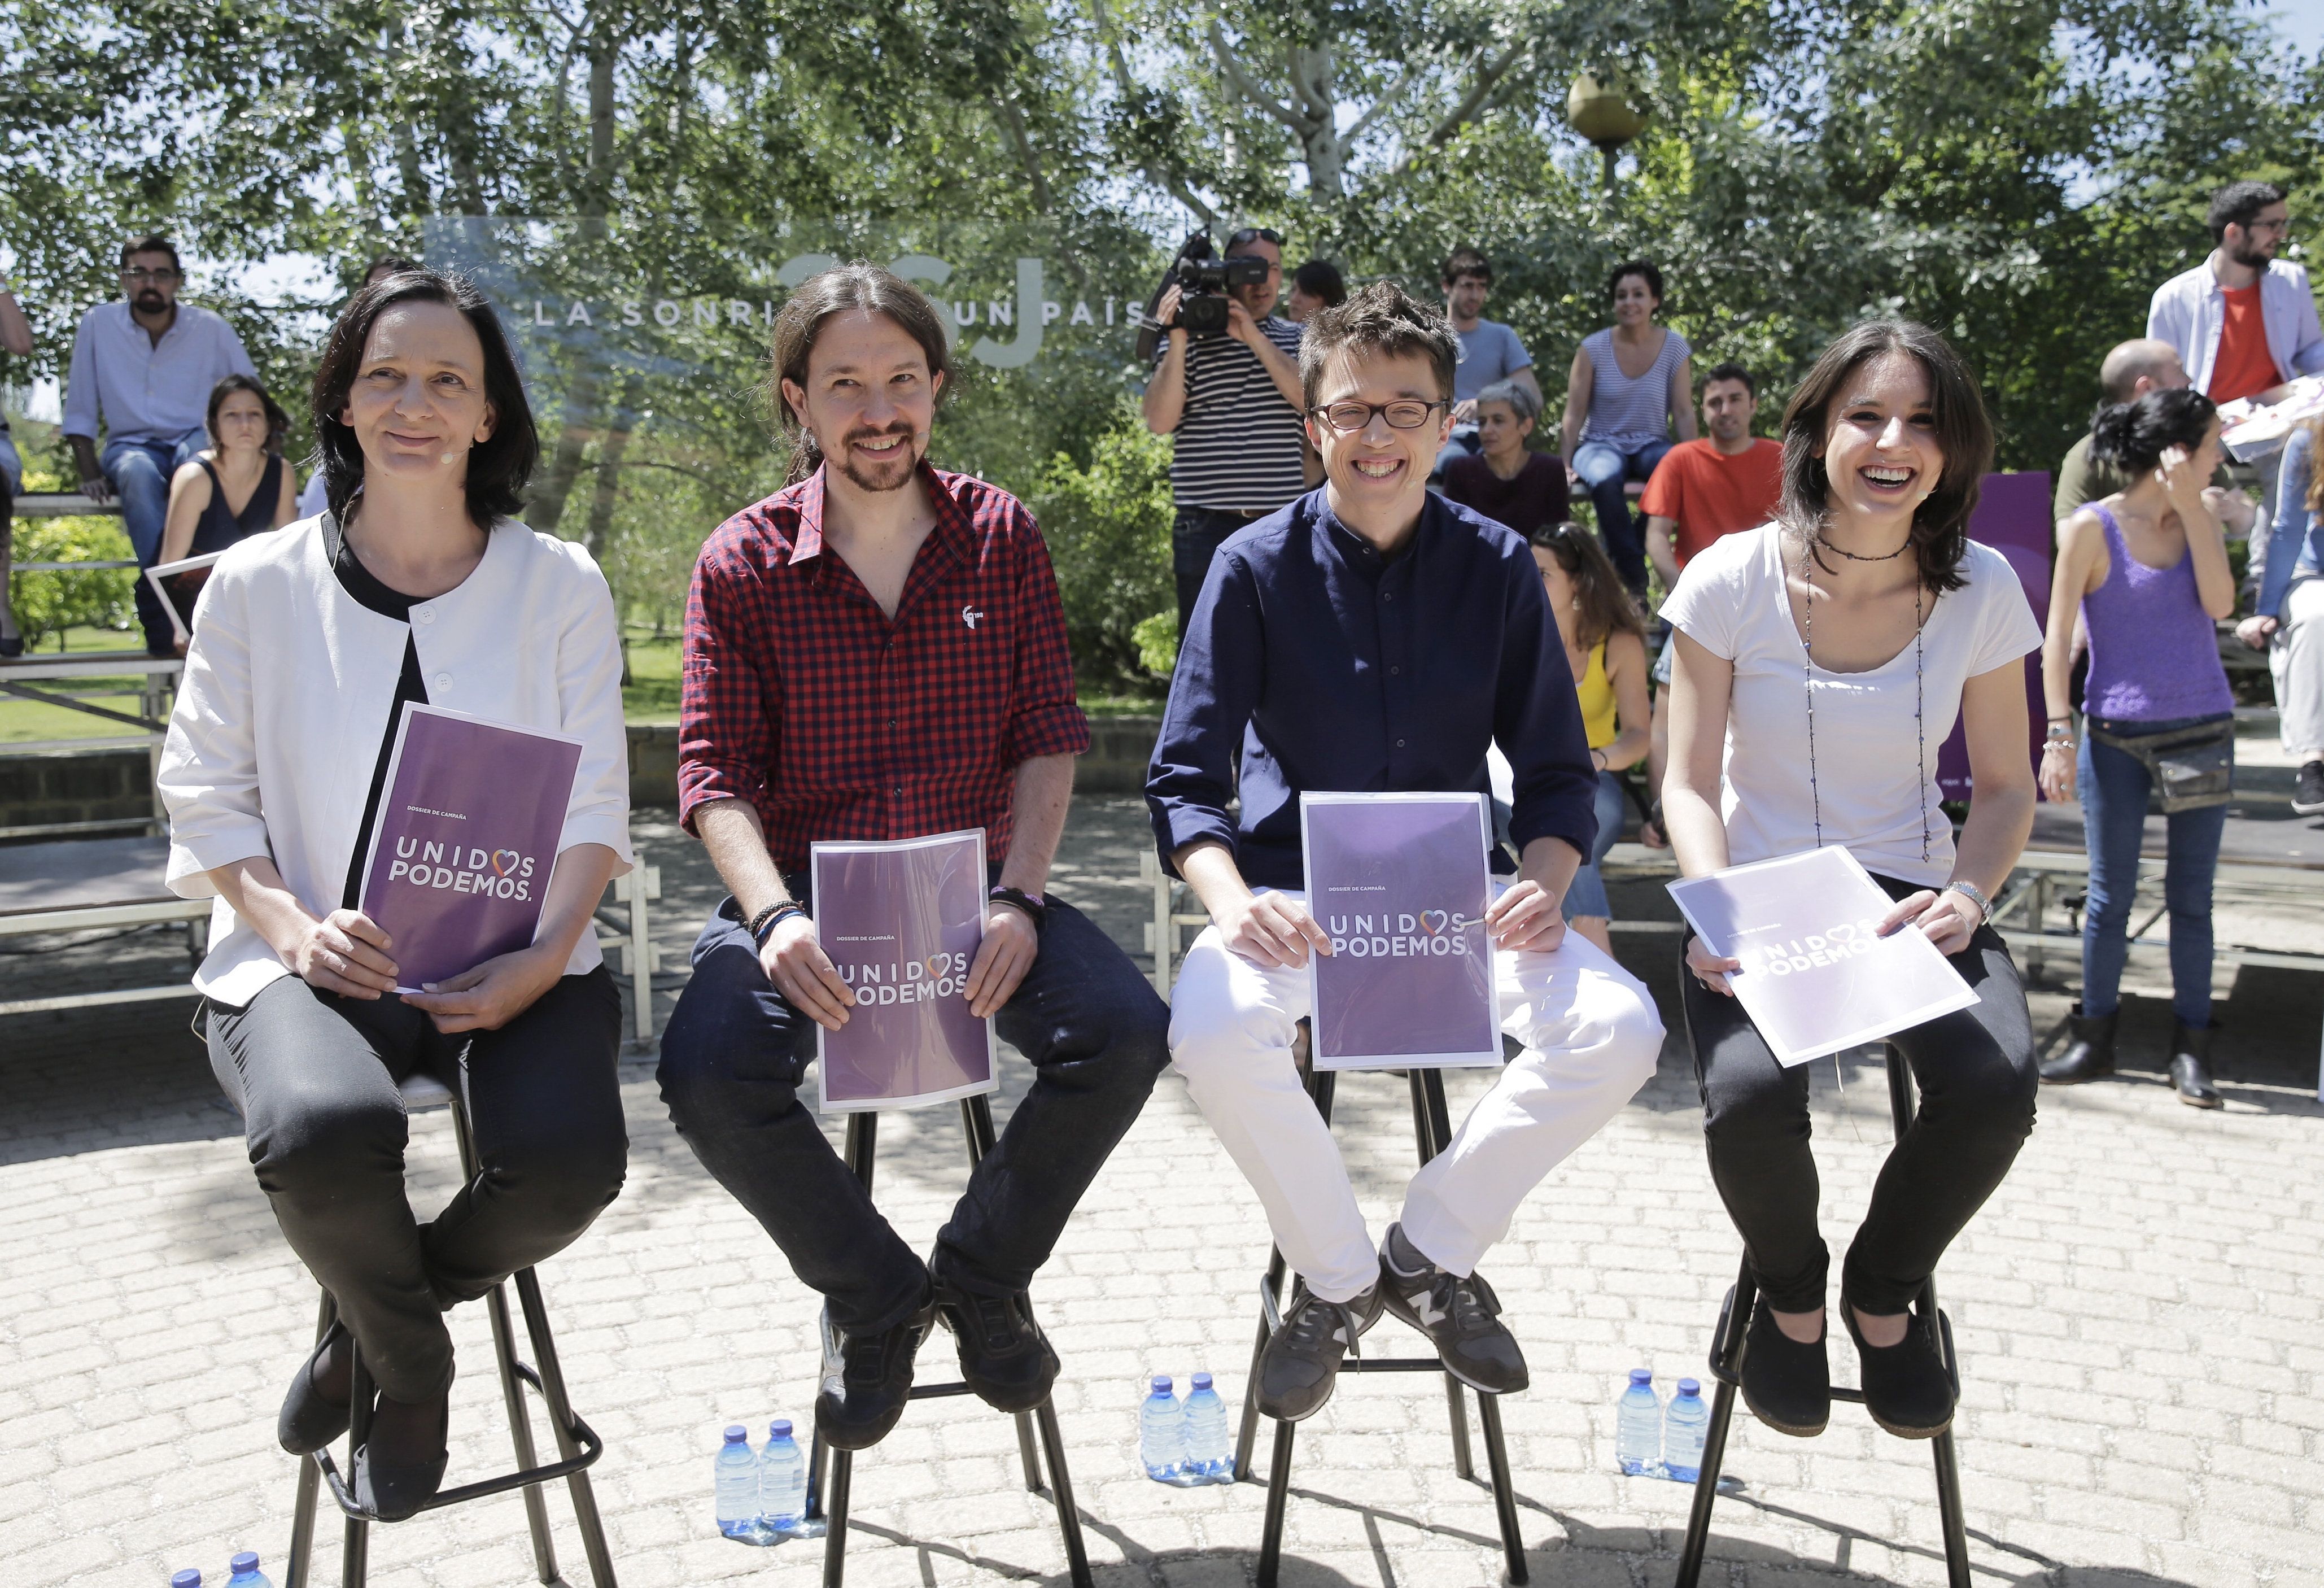 "La sonrisa de un país", el lema de la "campaña patriótica" de Unidos Podemos